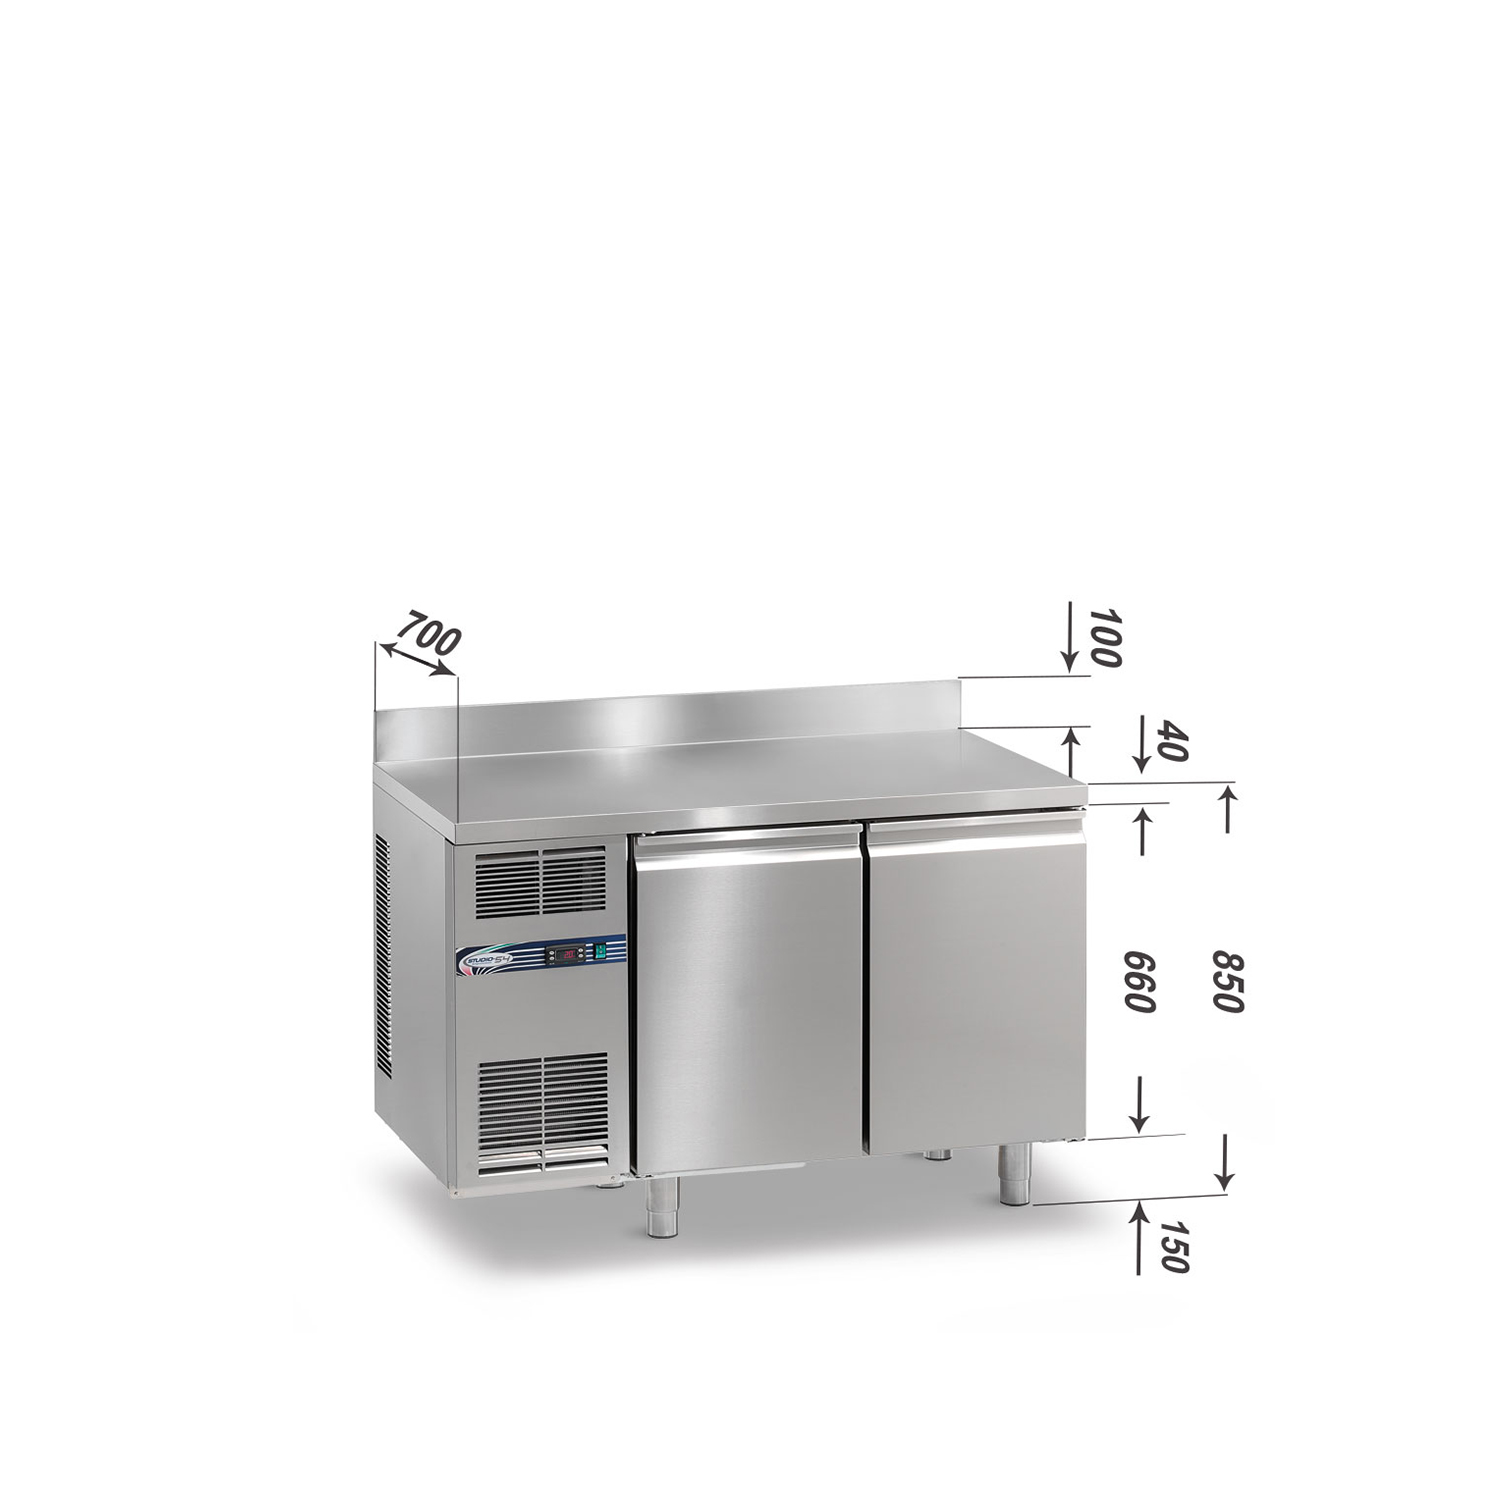 Tiefkühltisch DAIQUIRI Top Line H660 GN 1/1, B 1280  x T 700 x H 850+100 mm, 2 Kühlfächer, Arbeitsplatte mit Aufkantung